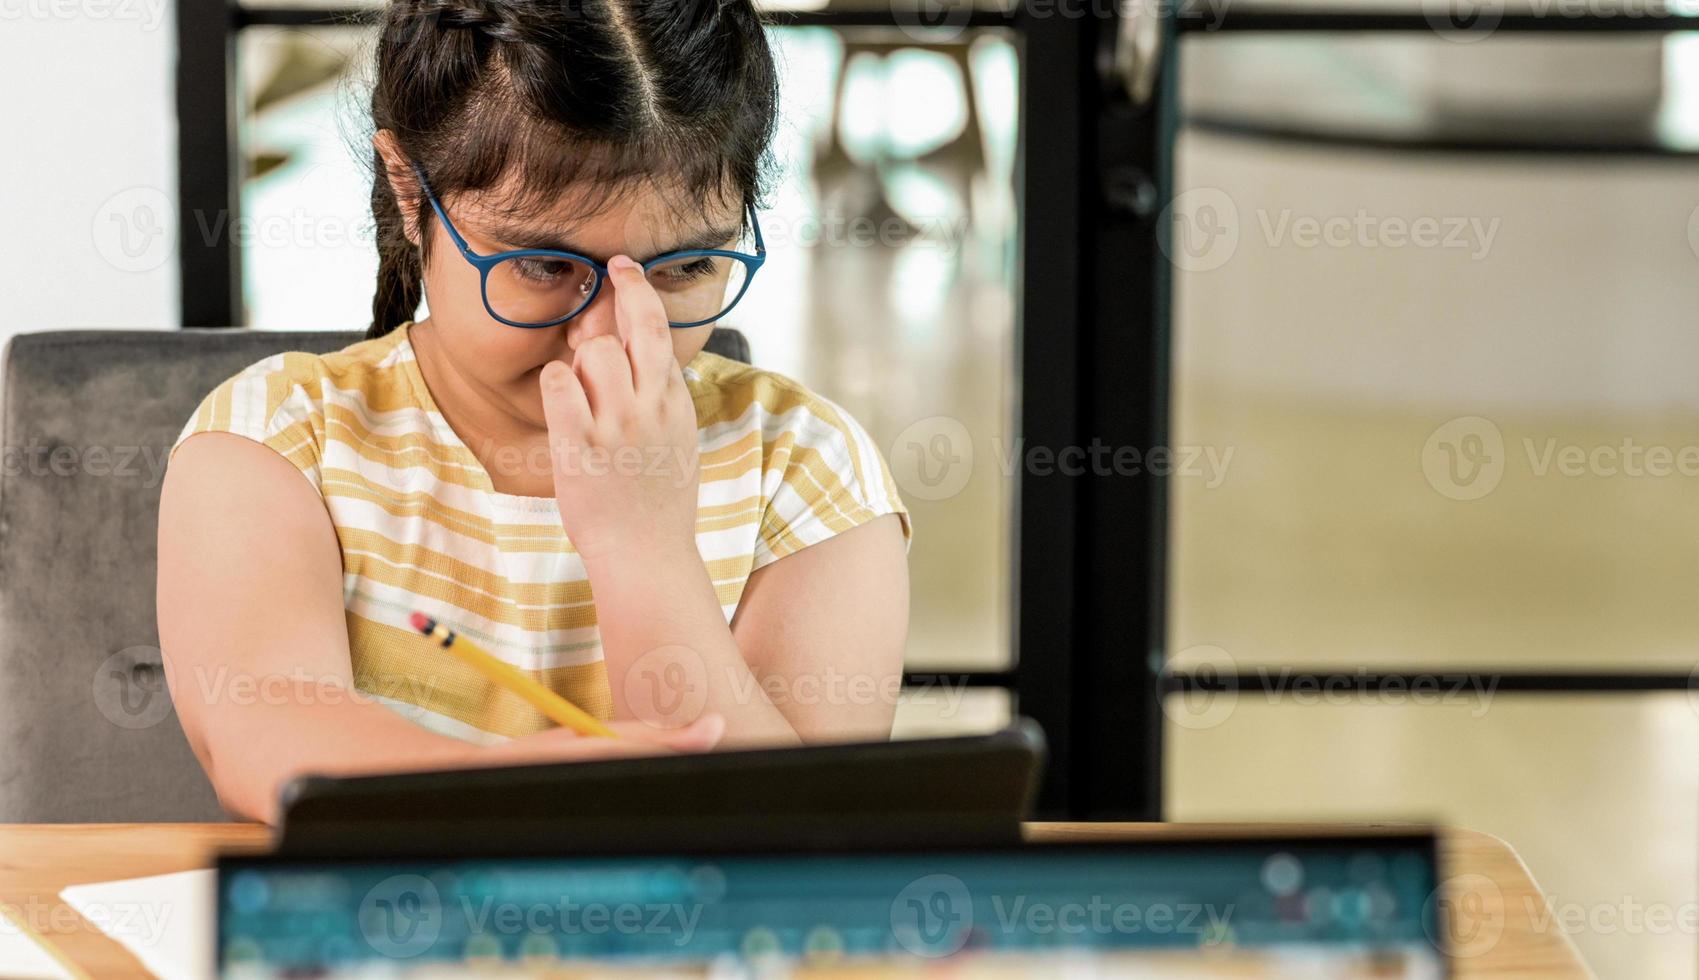 aziatisch kindmeisje legt de hand op een bril en ziet er moe uit van het studeren. foto